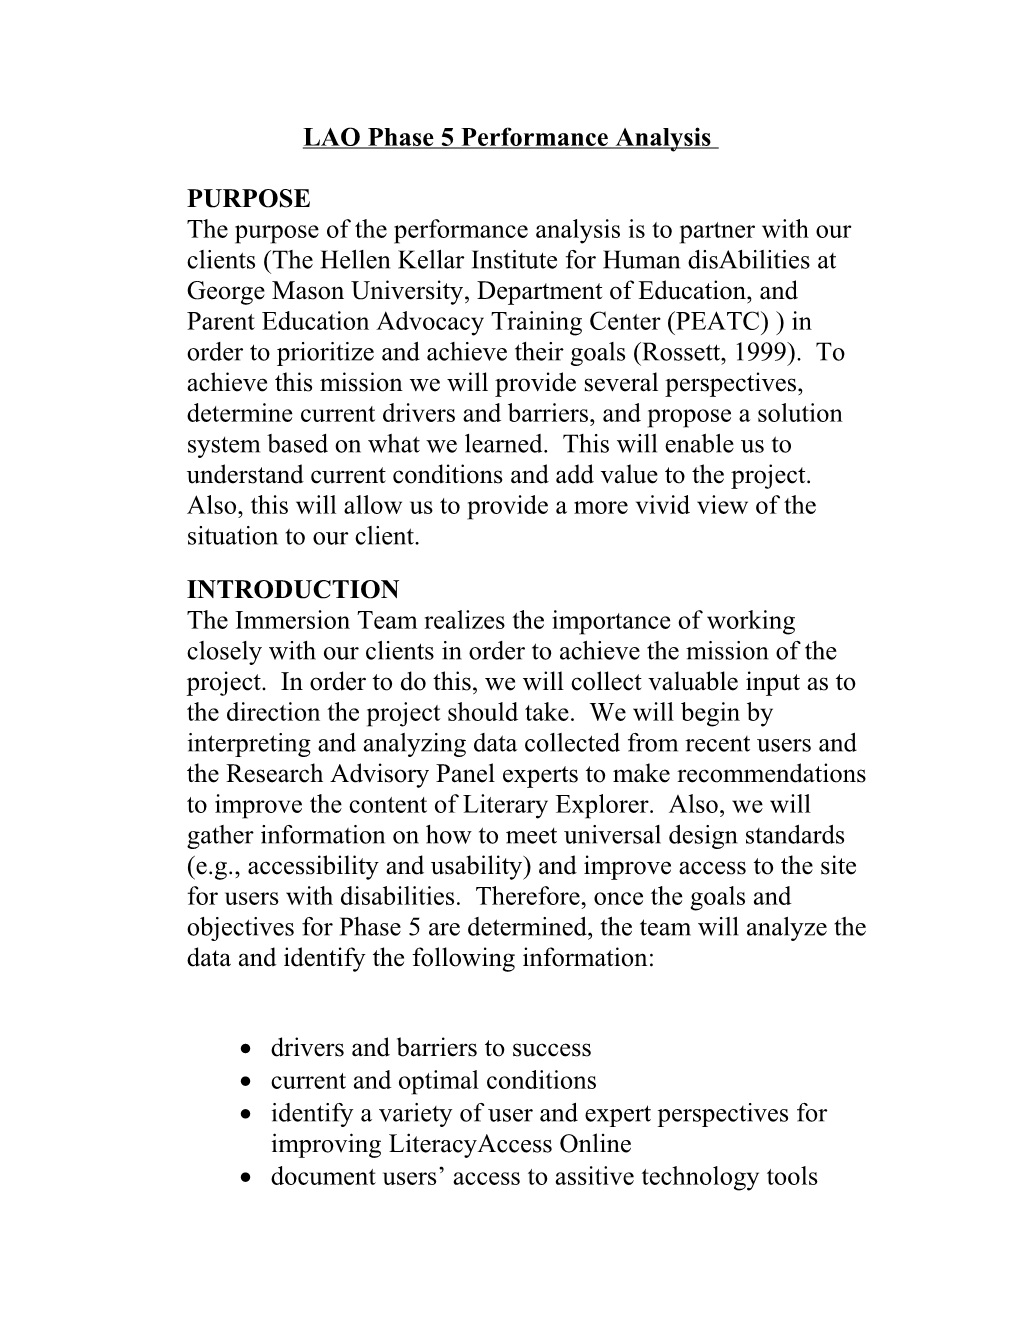 LAO Phase 5 Performance Analysis Plan